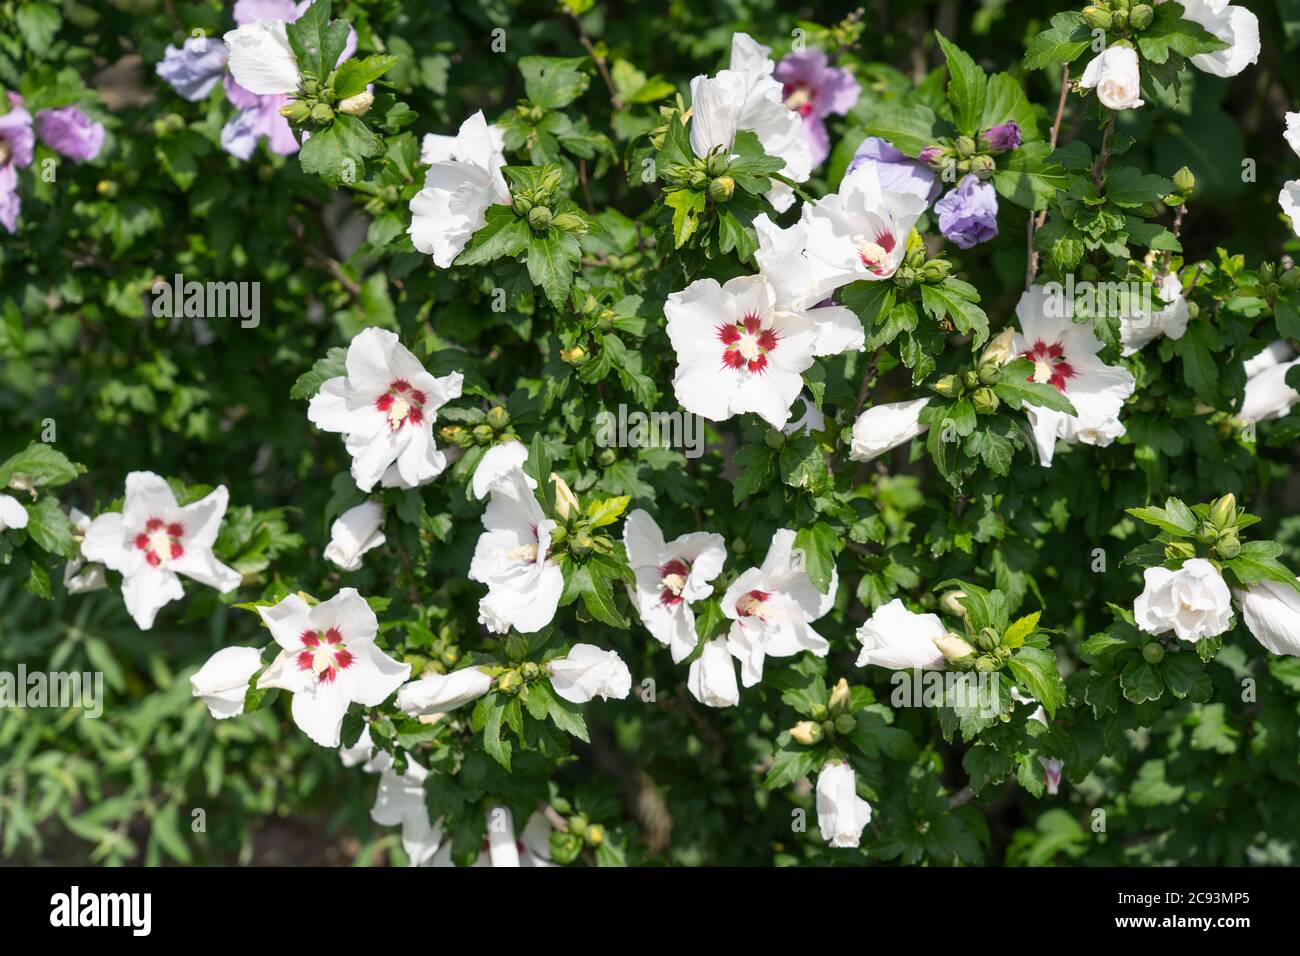 Hibiscus syriacus L. cuore rosso (Rosa di Shannon) un arbusto deciduo con grande tromba come fiori bianchi con un centro rosso Foto Stock